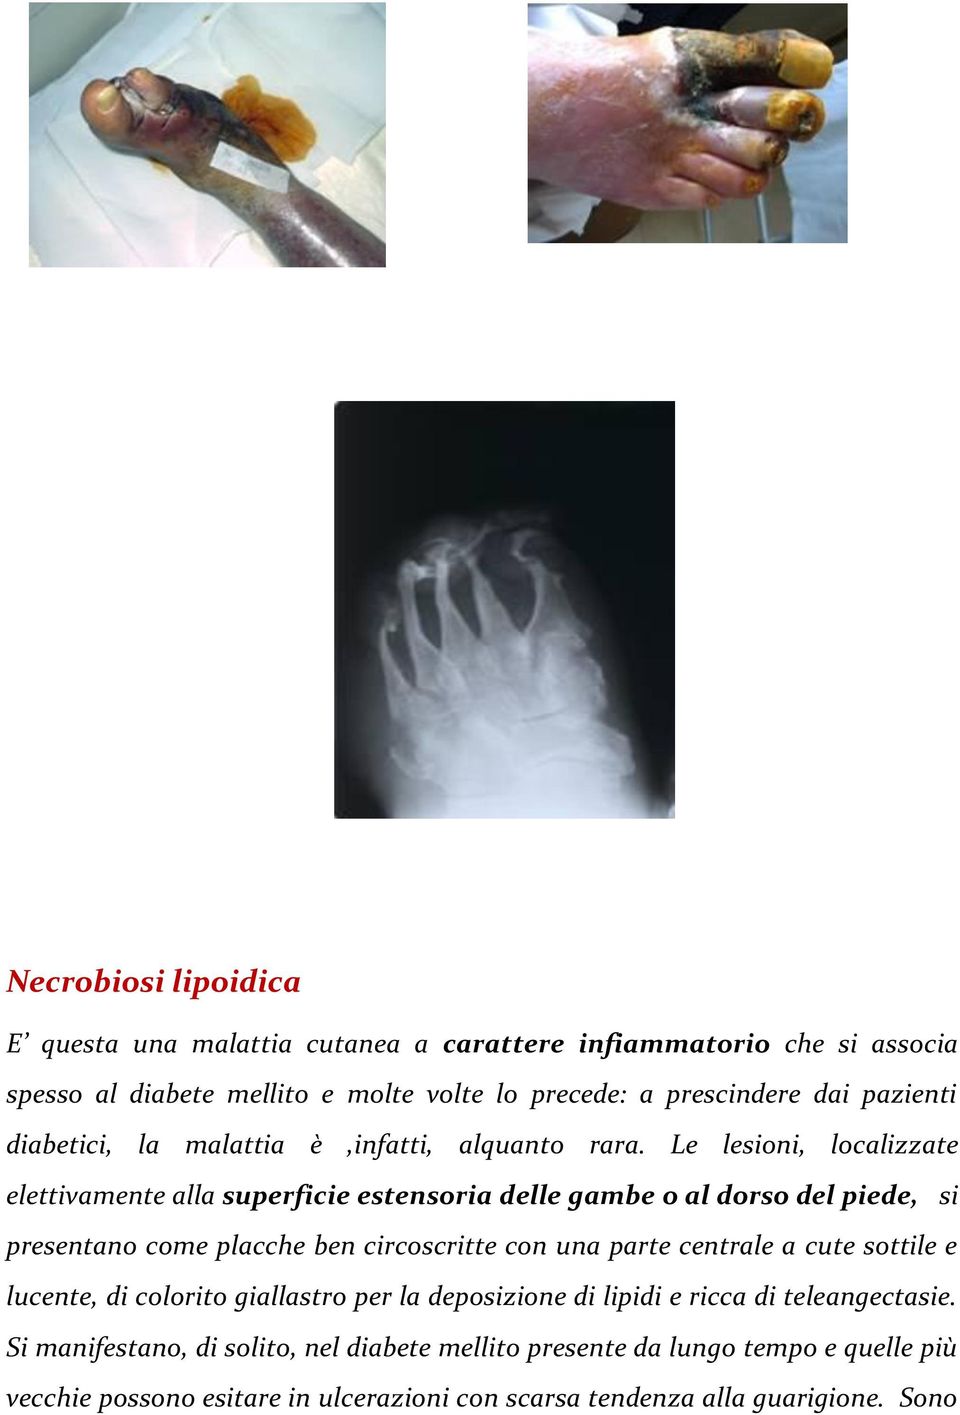 Le lesioni, localizzate elettivamente alla superficie estensoria delle gambe o al dorso del piede, si presentano come placche ben circoscritte con una parte